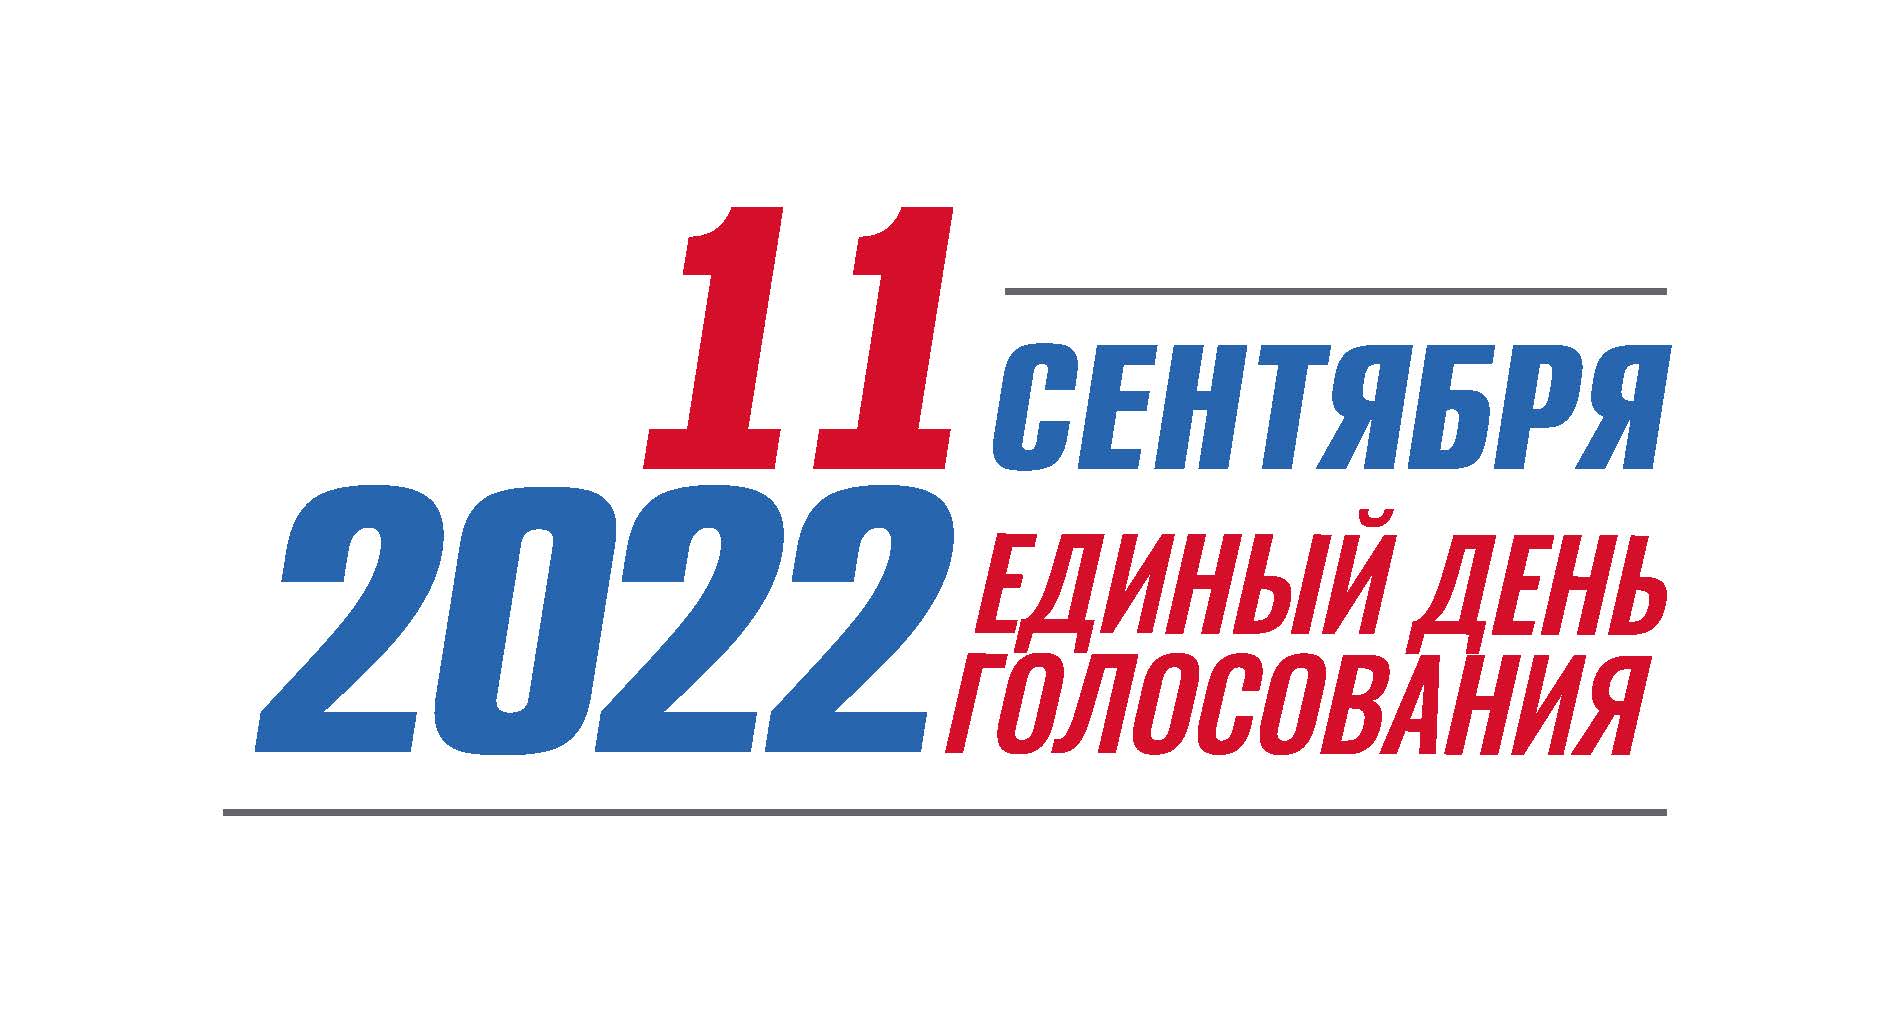 Сходите на выборы. Единый день голосования 11 сентября 2022 года. Единый день голосования 2022. Единый день голосования 2022 логотип. Выборы 2022 единый день голосования.